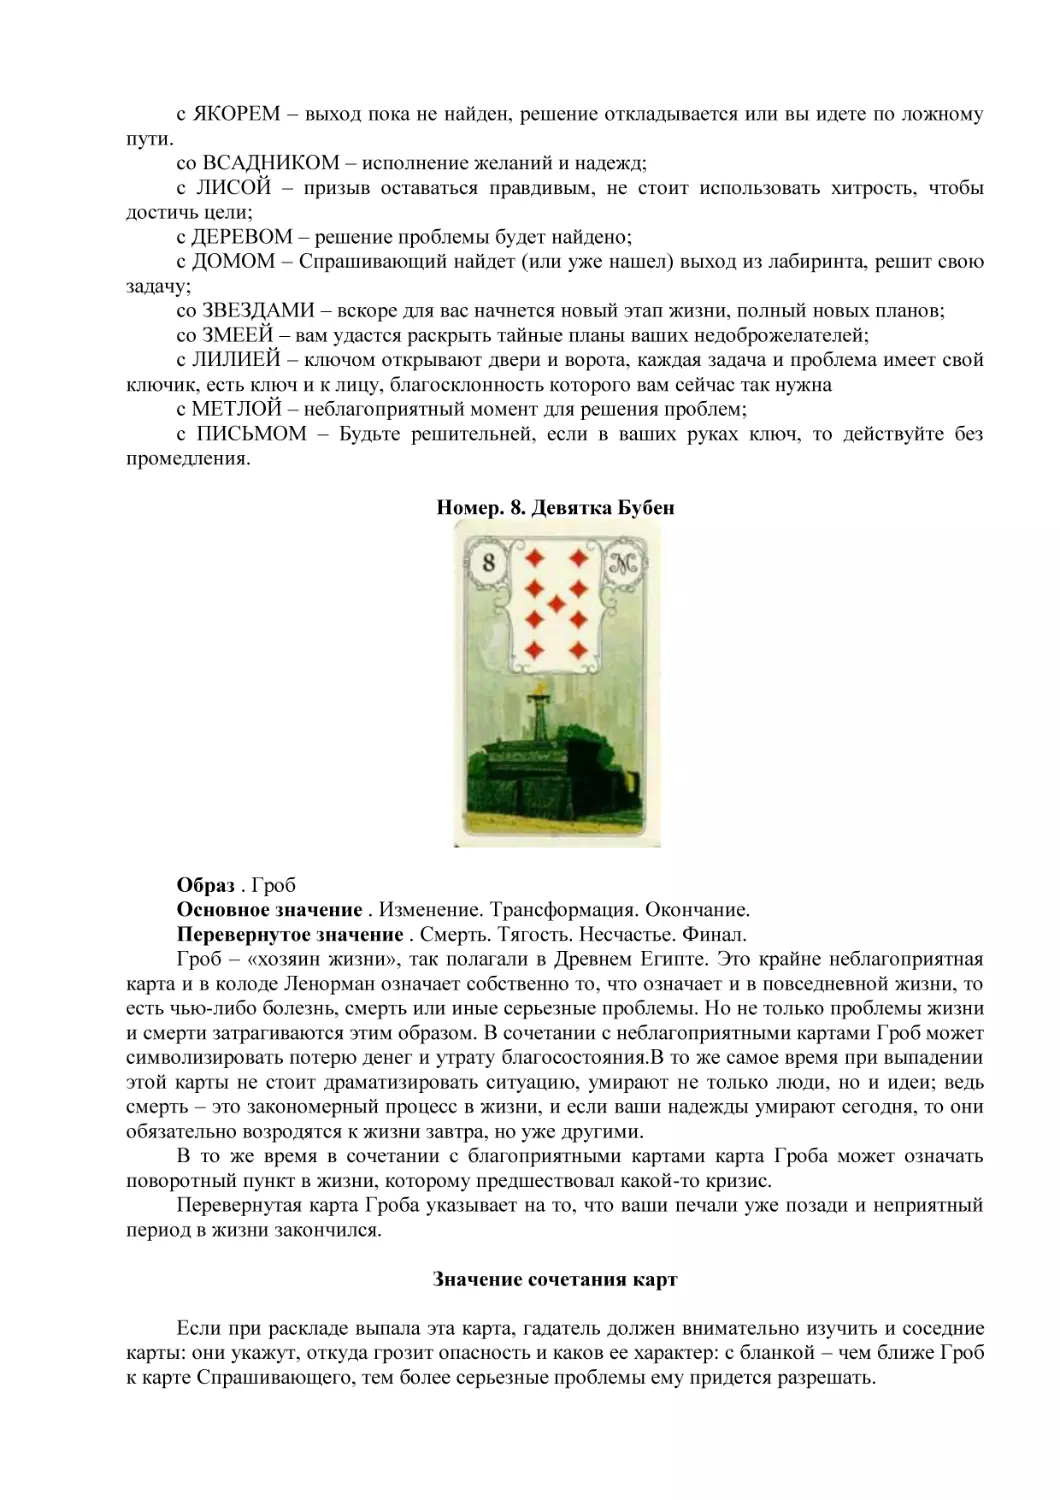 Номер. 8. Девятка Бубен
Значение сочетания карт (3)